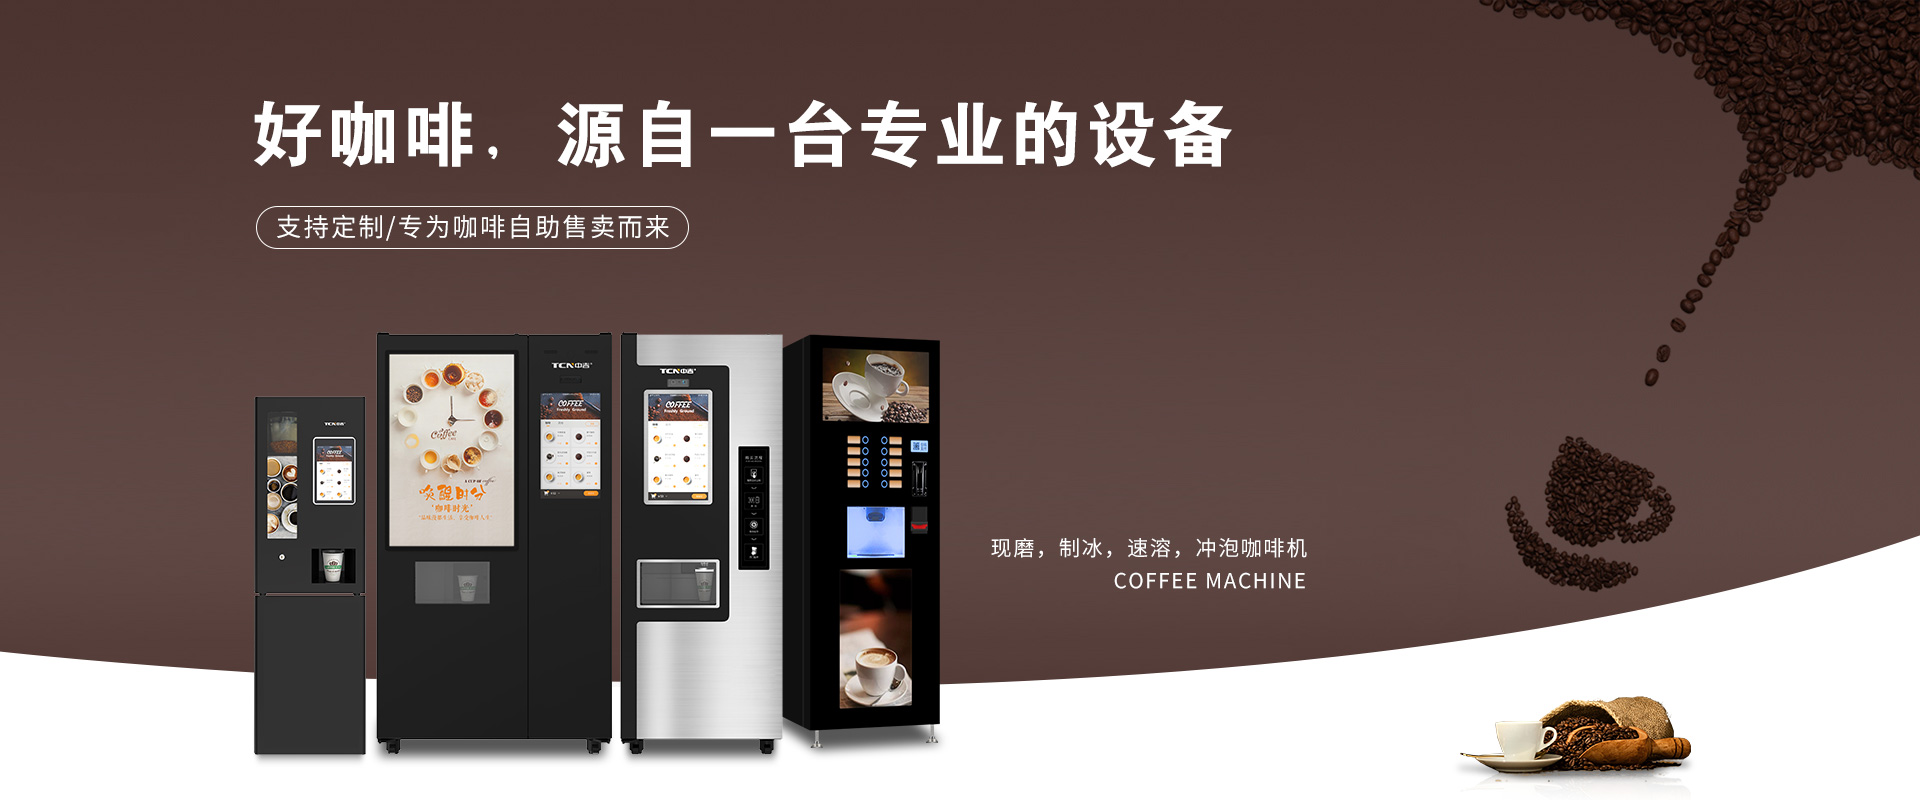 千亿市场，中华购彩网welcome现磨制冰咖啡机，致富正其时~